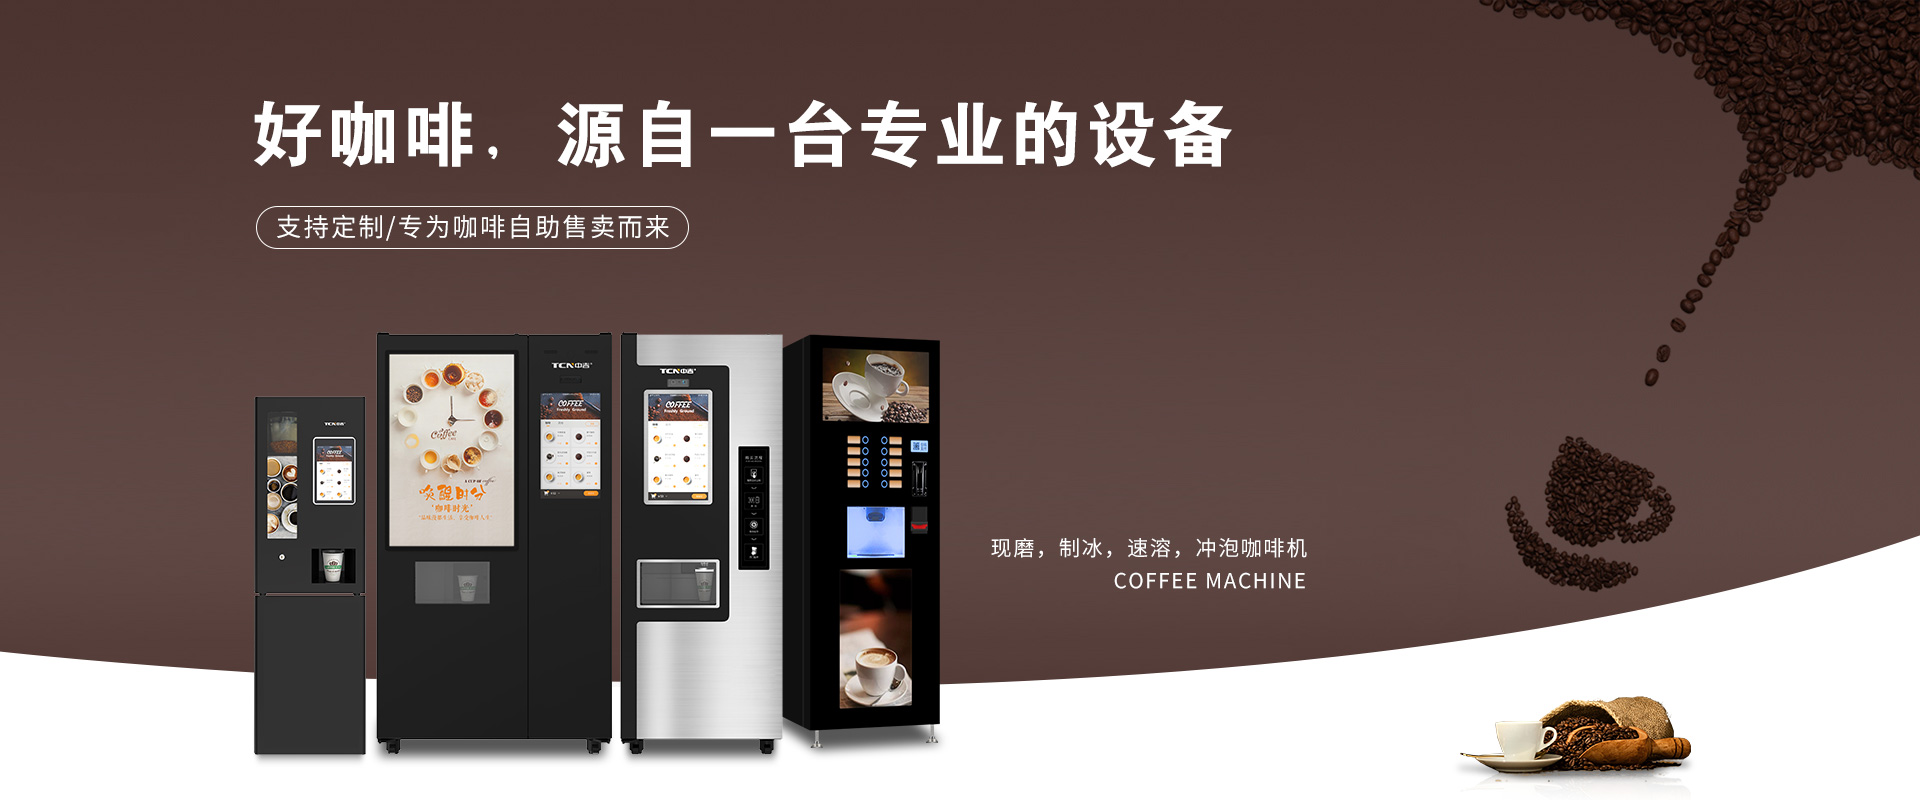 千亿市场，中华购彩网welcome现磨制冰咖啡机，致富正其时~